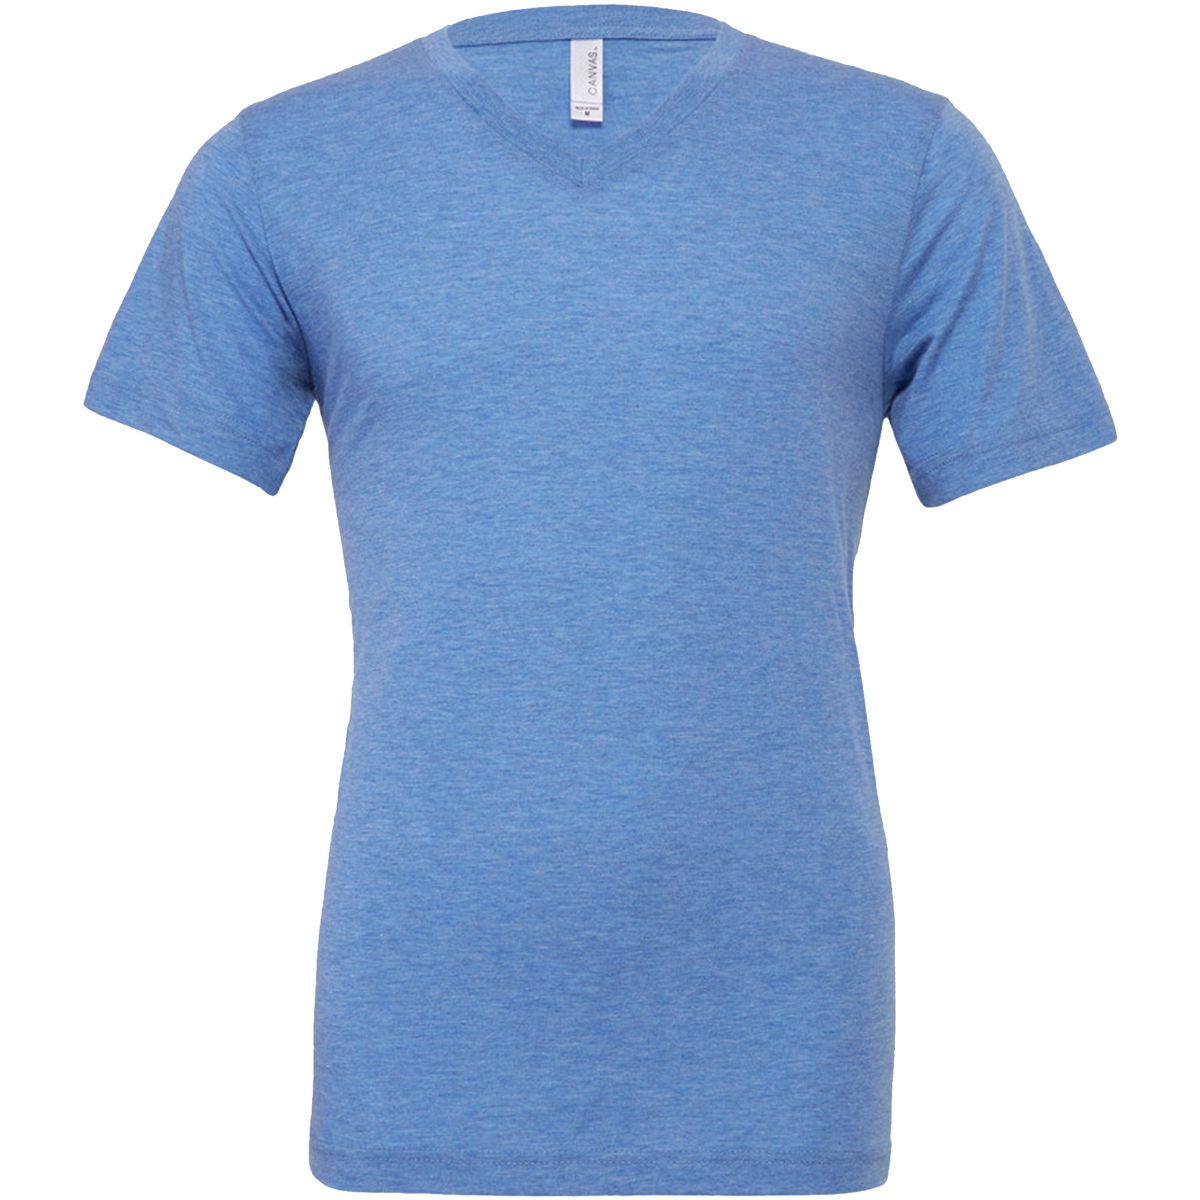 Abbigliamento Uomo T-shirt maniche corte Bella + Canvas CA3415 Blu